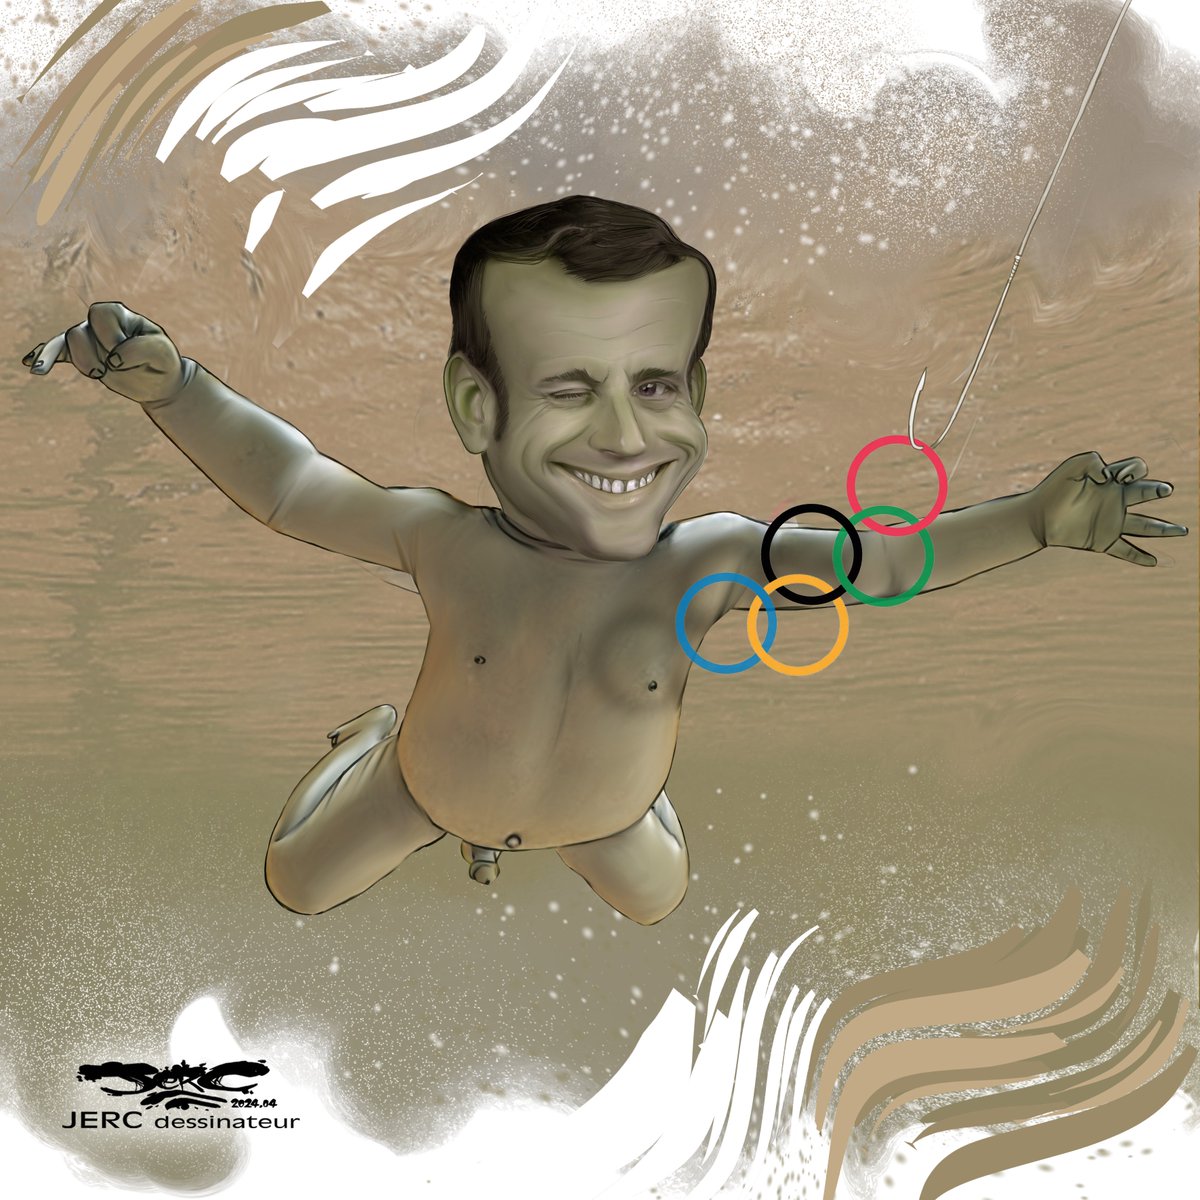 dessin de @dessingraffjerc du lundi 15 avril 2024
Caricature Emmanuel Macron dans la seine  
- LE NIRVARAT -
facebook.com/jercdessin
jerc-tbm.com
#Macron  #Rigueur #AssuranceChomage #Deficit #JO #macronie #seine #baignade #Paris2024